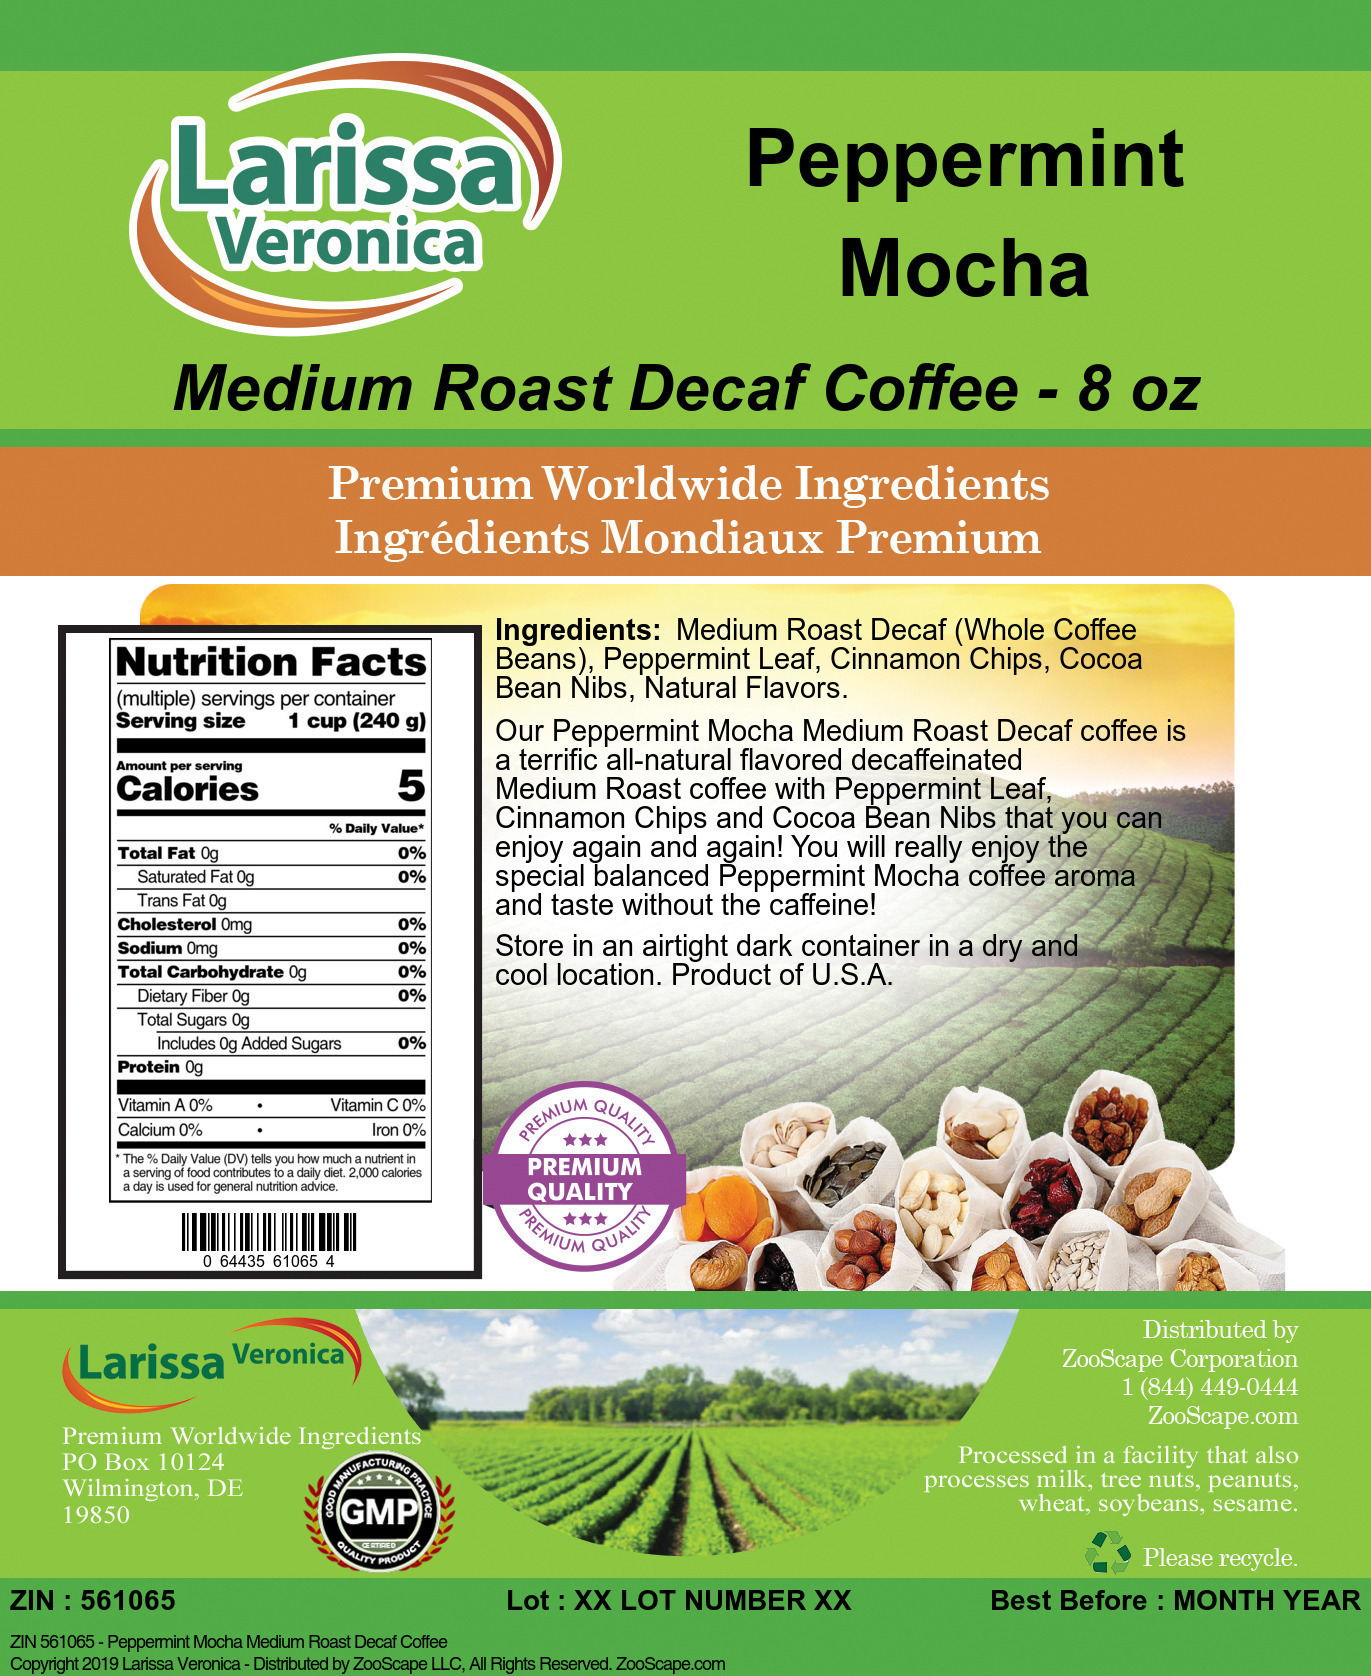 Peppermint Mocha Medium Roast Decaf Coffee - Label